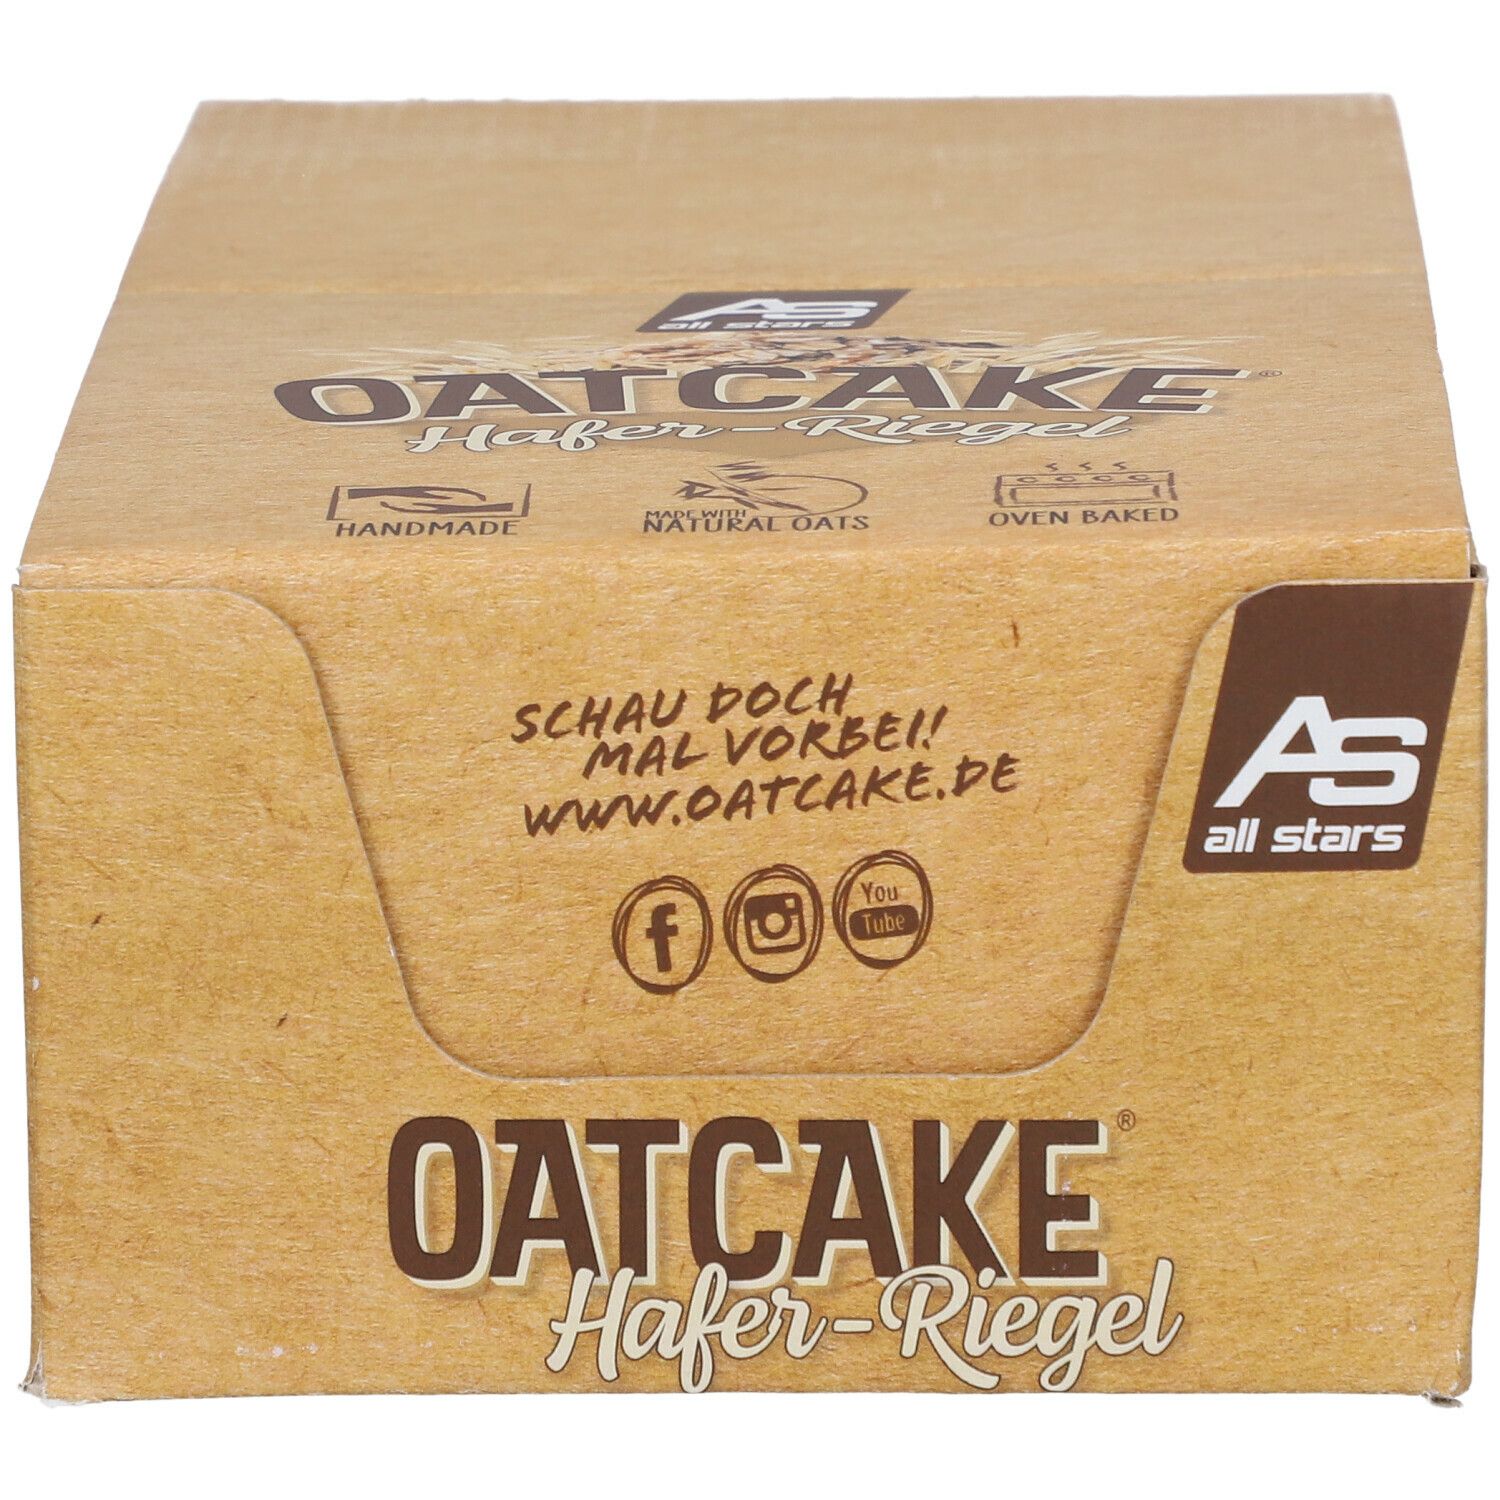 All Stars® Oatcake Hafer-Riegel Banana-Bread